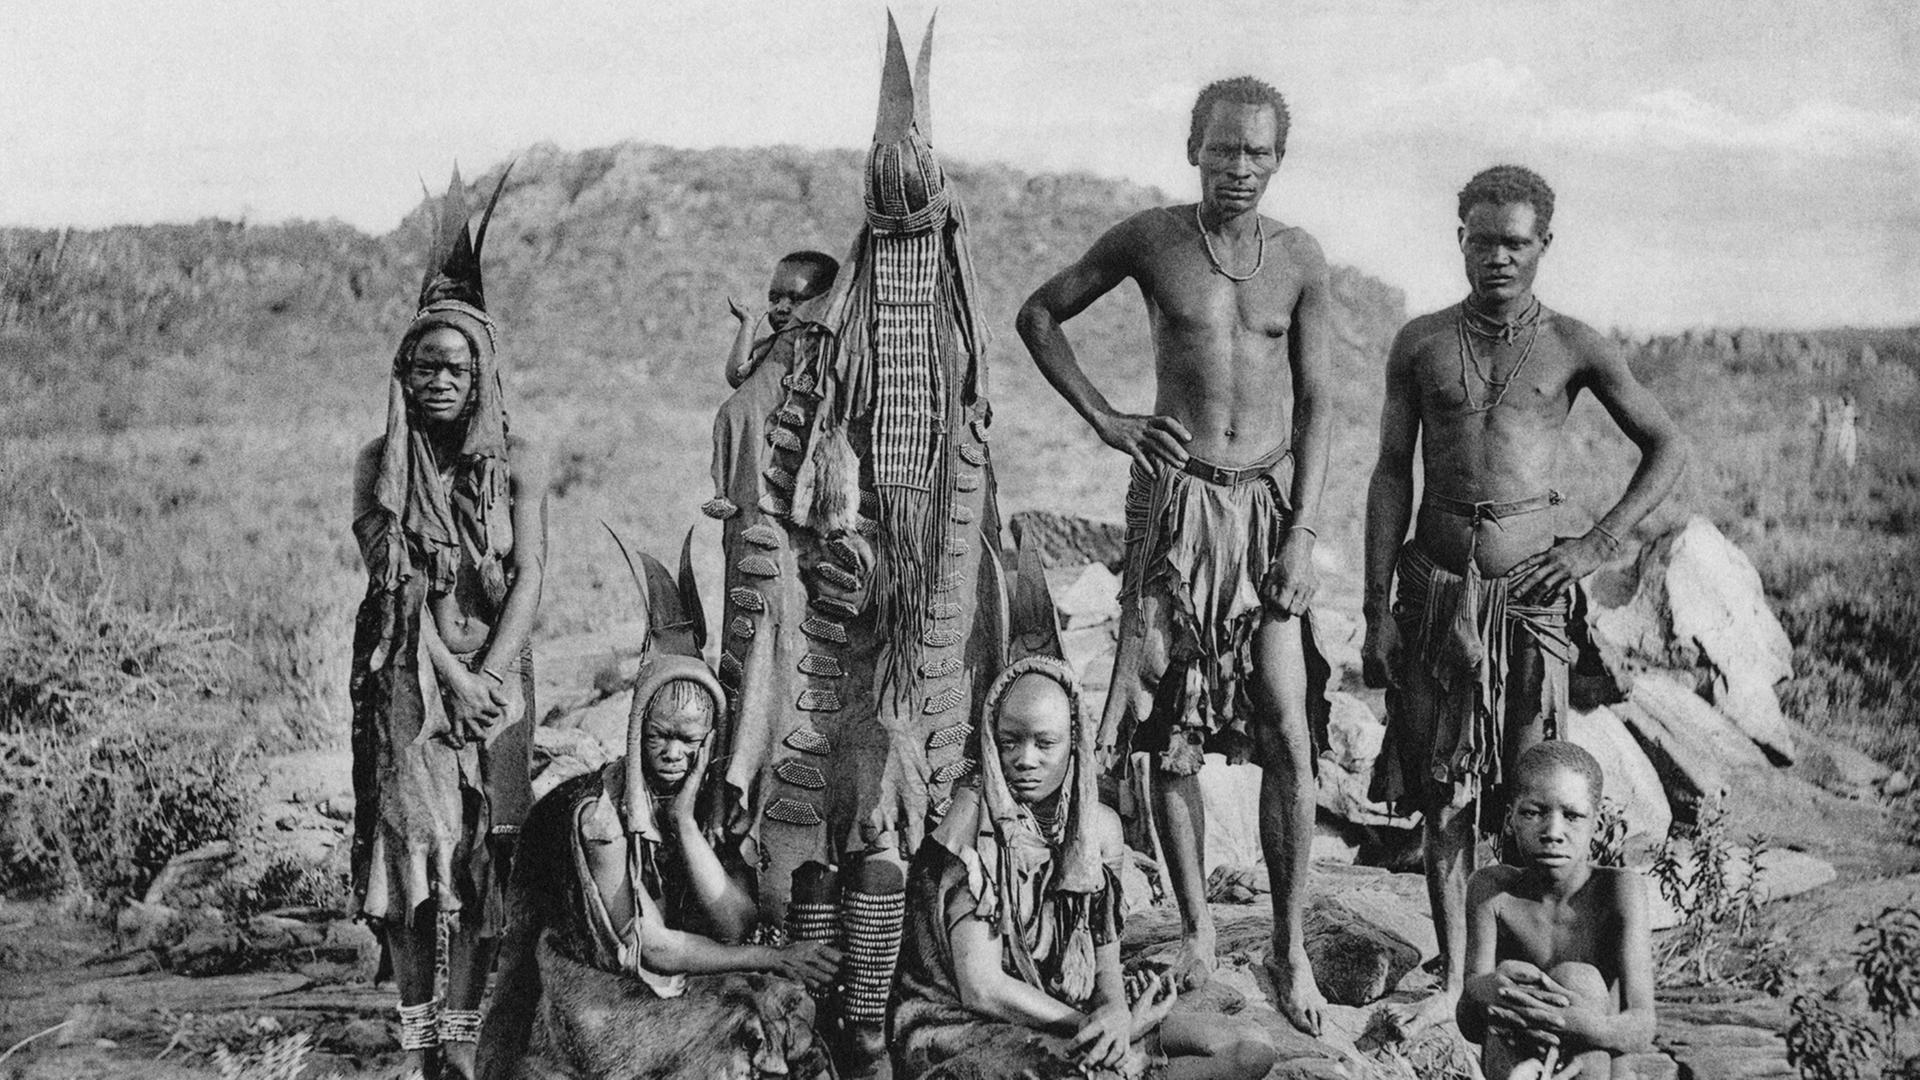 Zu sehen ist ein Schwarzweiß-Foto einer Herero-Familie, wie es scheint.